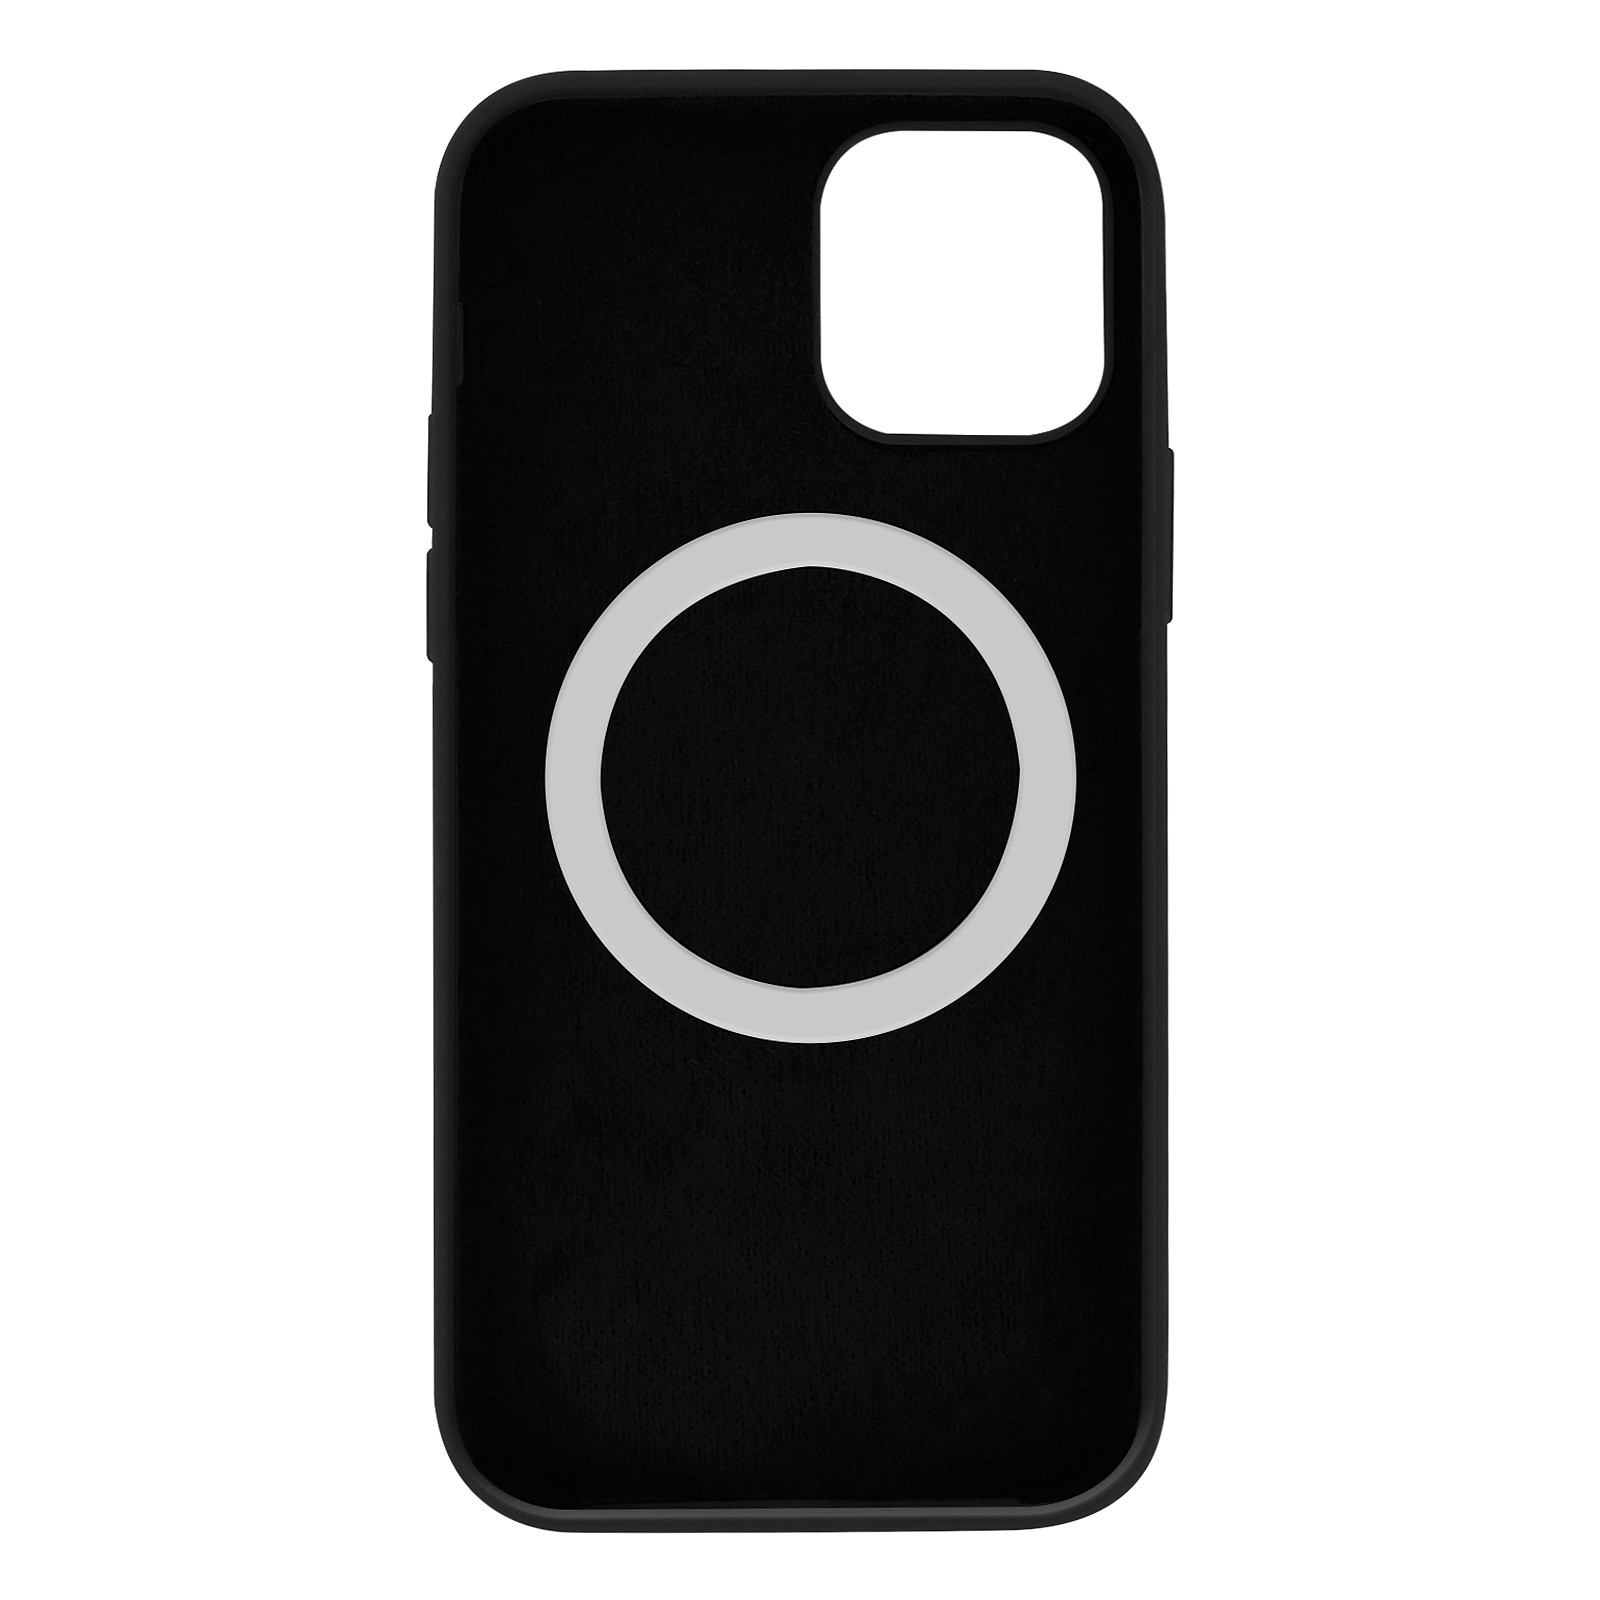 Avizar Coque pour iPhone 12 Mini Magsafe Silicone semi-rigide Anti-traces Noir - Coque telephone Avizar